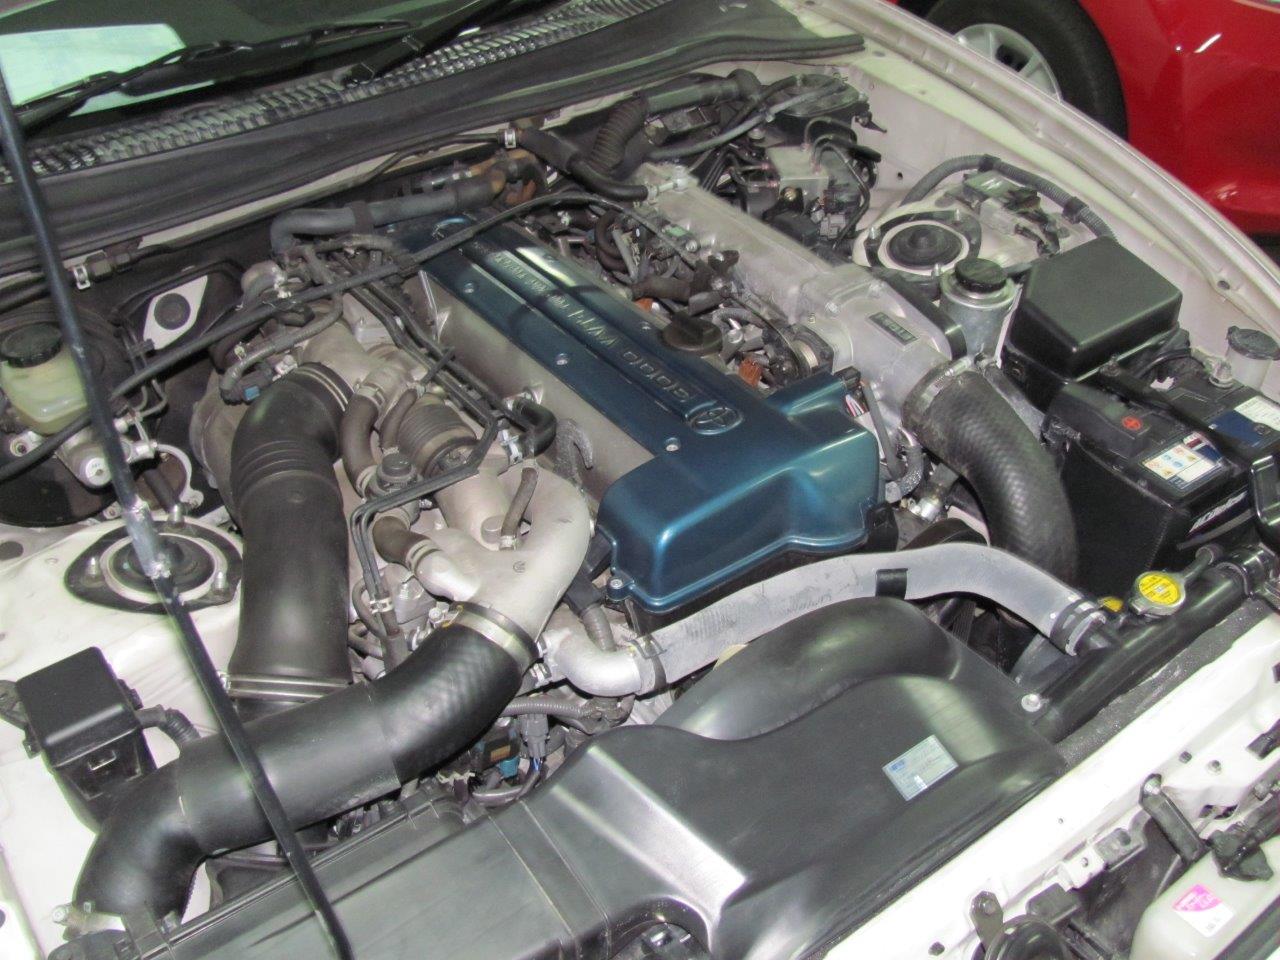 2001 Toyota Supra RZ-S 3L twin turbo VVTi engine